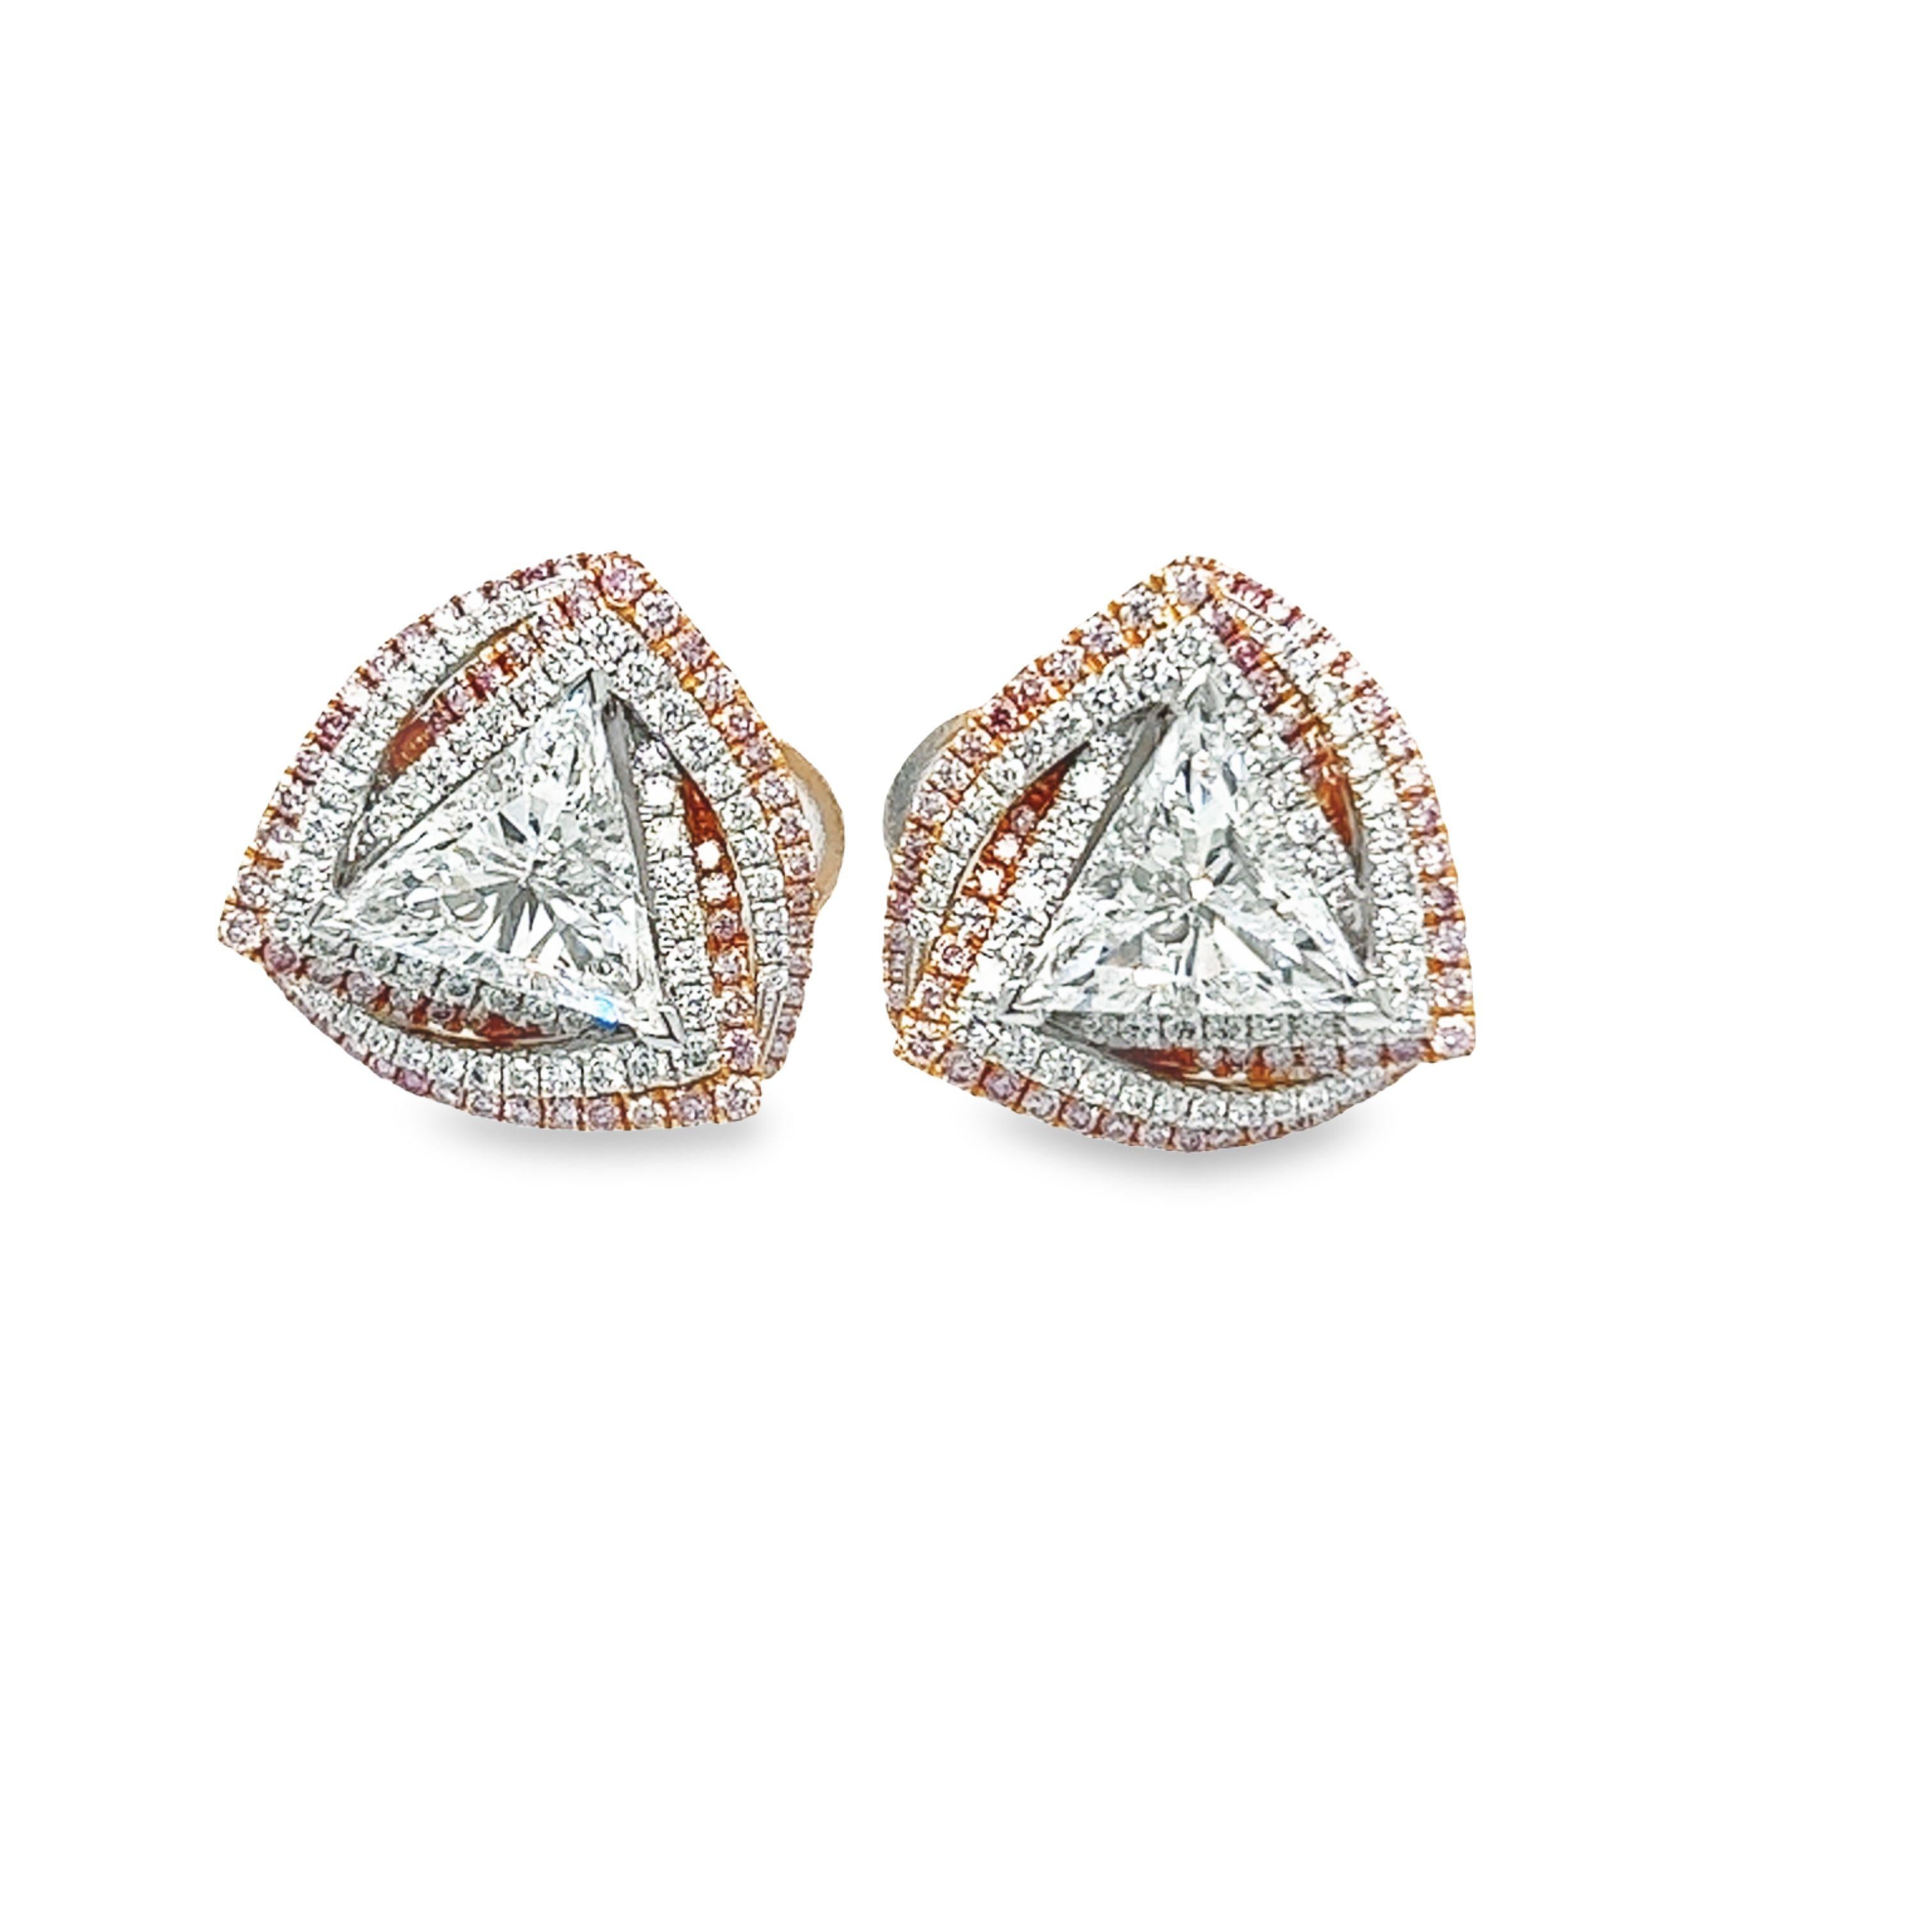 Ein wunderschönes Art-Deco-Paar dreieckiger Diamant-Ohrringe mit 2,48 Karat Gesamtgewicht E SI1 GIA zertifiziert. Diese wunderschönen, leichten Ohrringe sind in 18 Karat Weißgold gefasst und mit einem eleganten rosafarbenen und weißen Mikropflaster